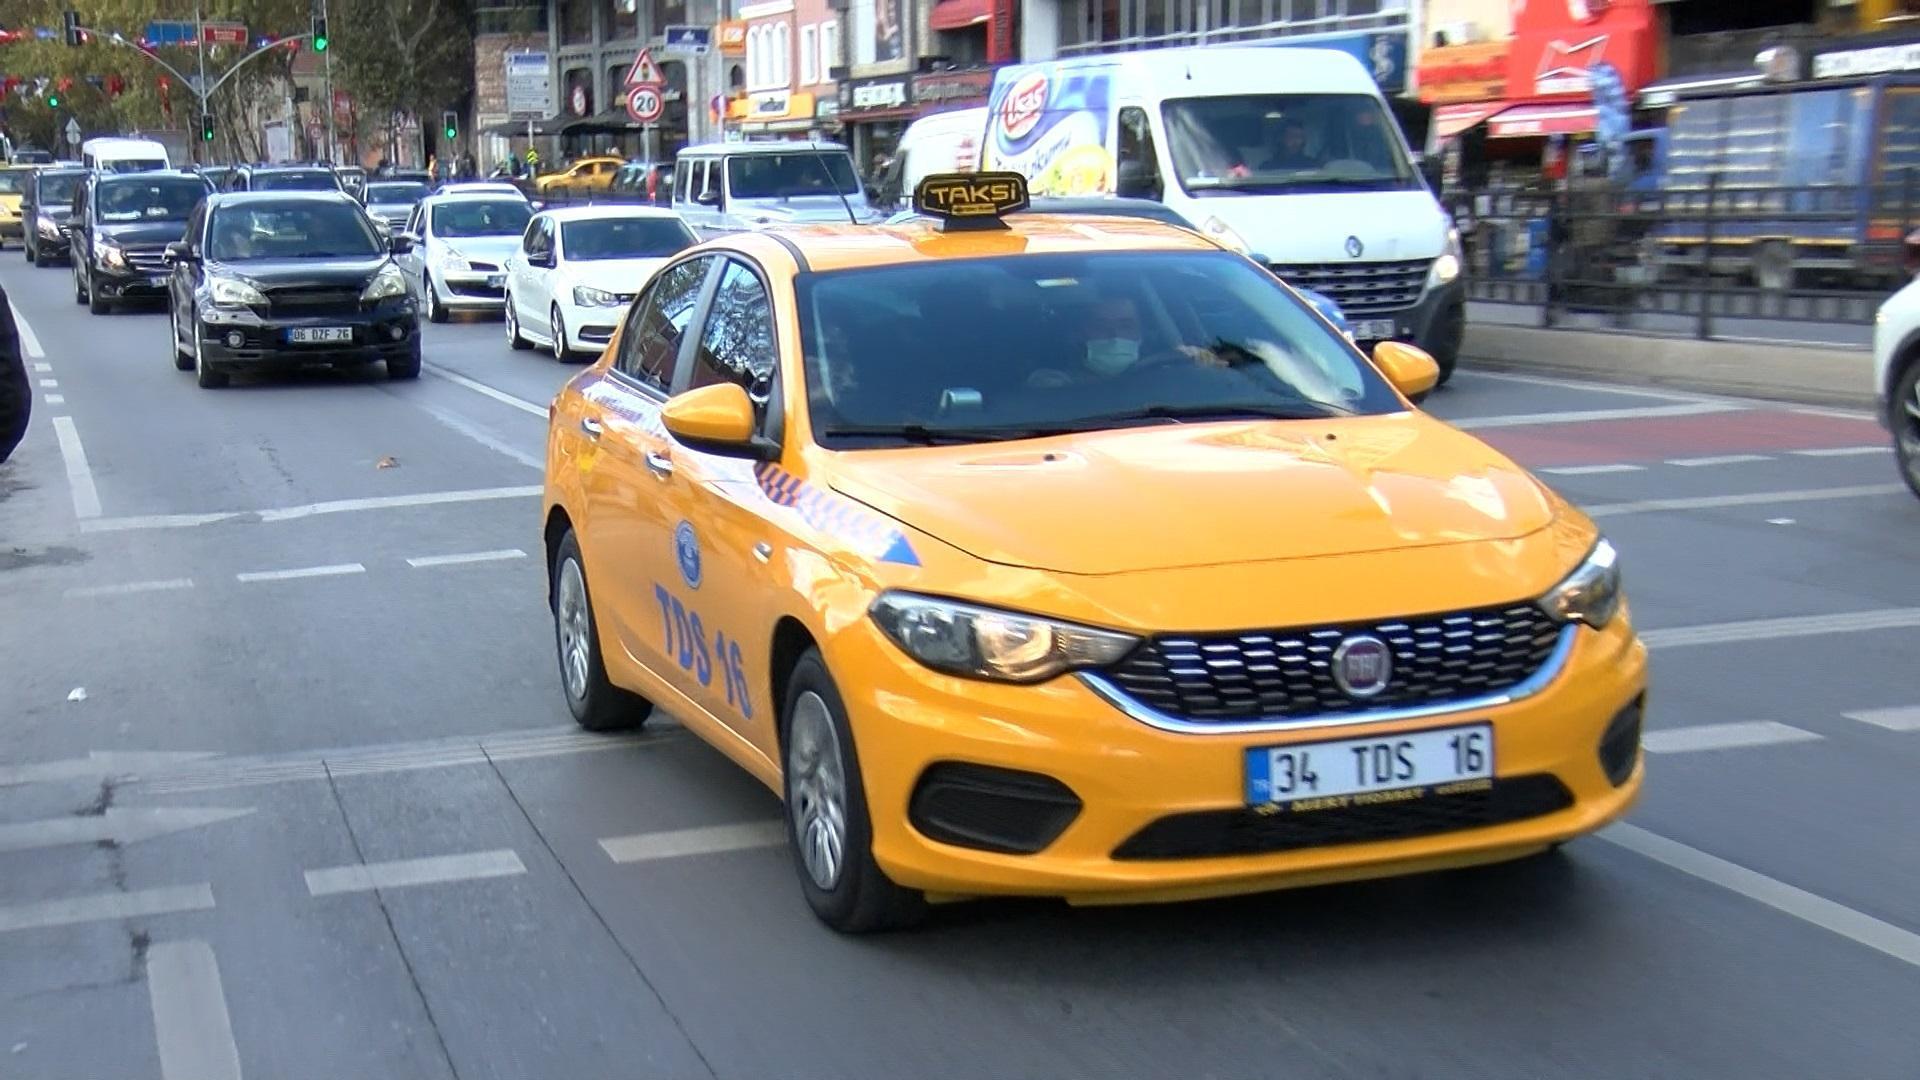 İBBnin taksi projesi... Taksiciler Esnaf Odası Başkanı Aksu: Bu rakamlar inanılacak gibi değil